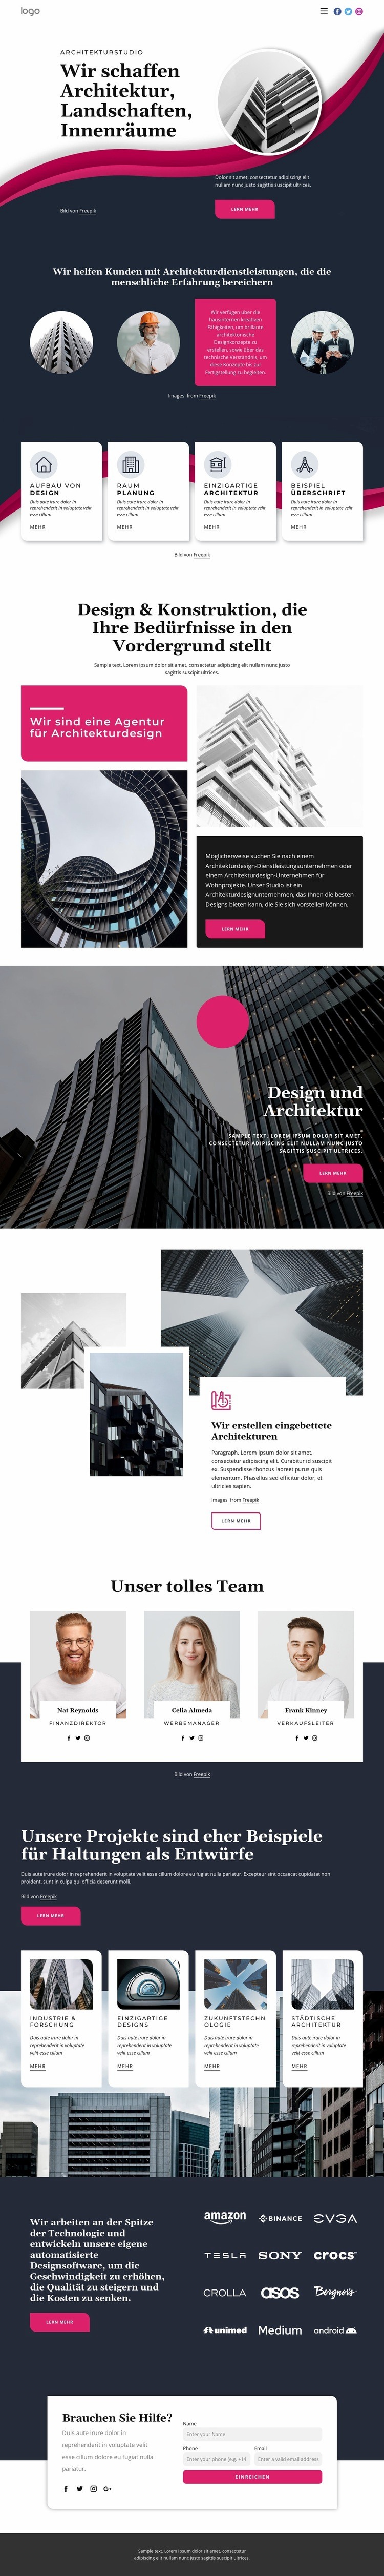 Wir schaffen großartige Architektur Eine Seitenvorlage